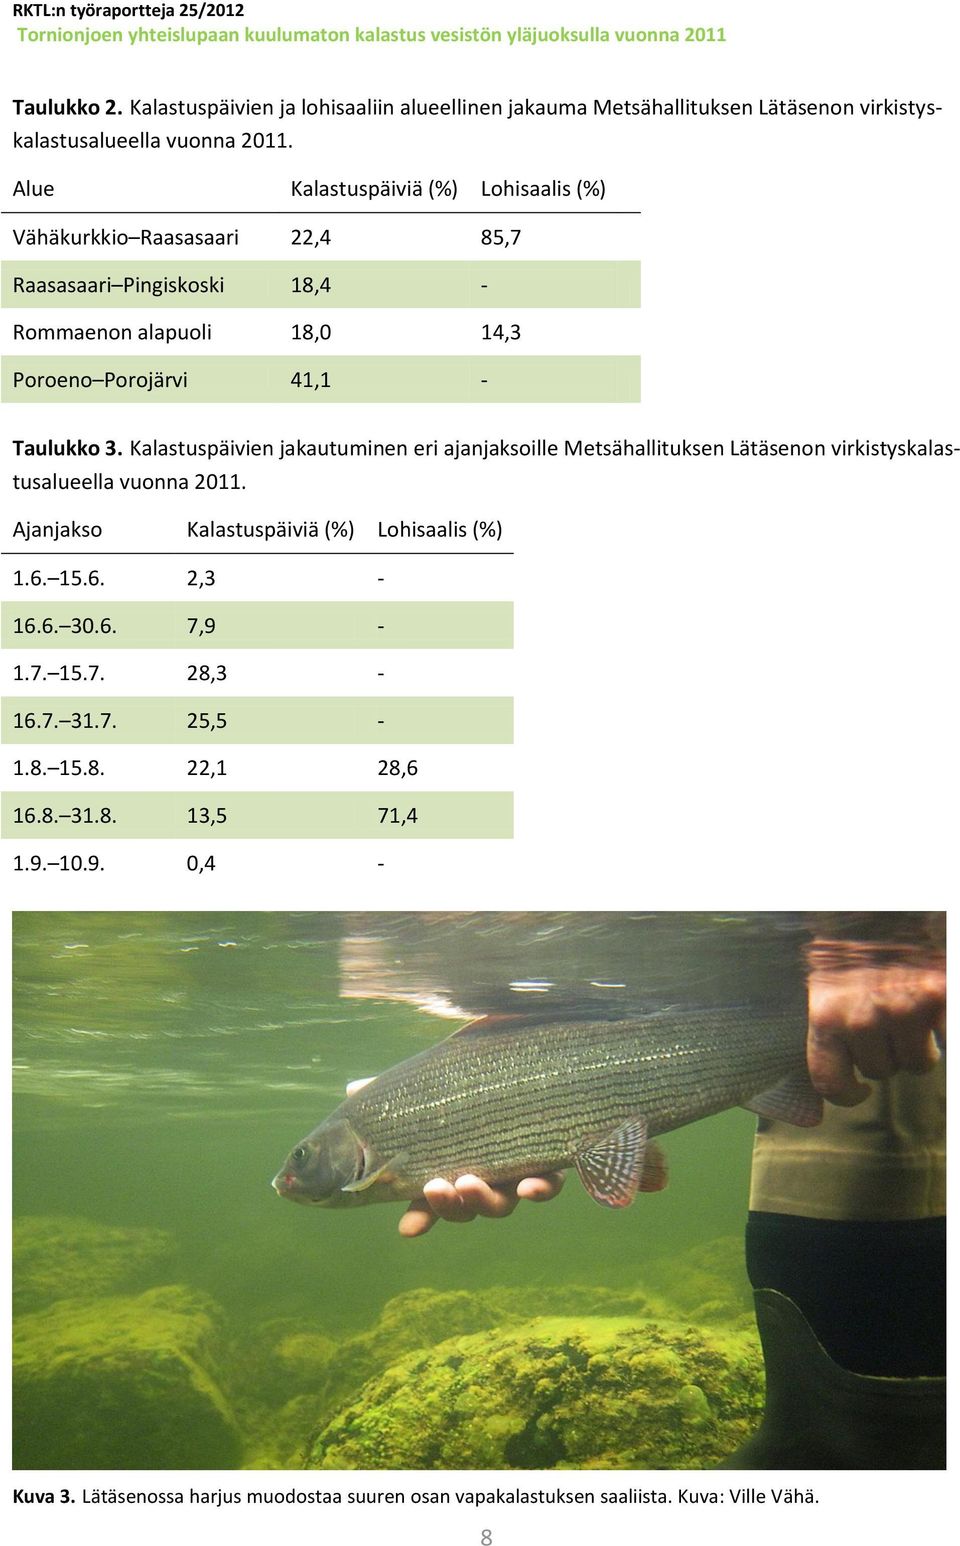 Kalastuspäivien jakautuminen eri ajanjaksoille Metsähallituksen Lätäsenon virkistyskalastusalueella vuonna 2011. Ajanjakso Kalastuspäiviä (%) Lohisaalis (%) 1.6. 15.6. 2,3-16.